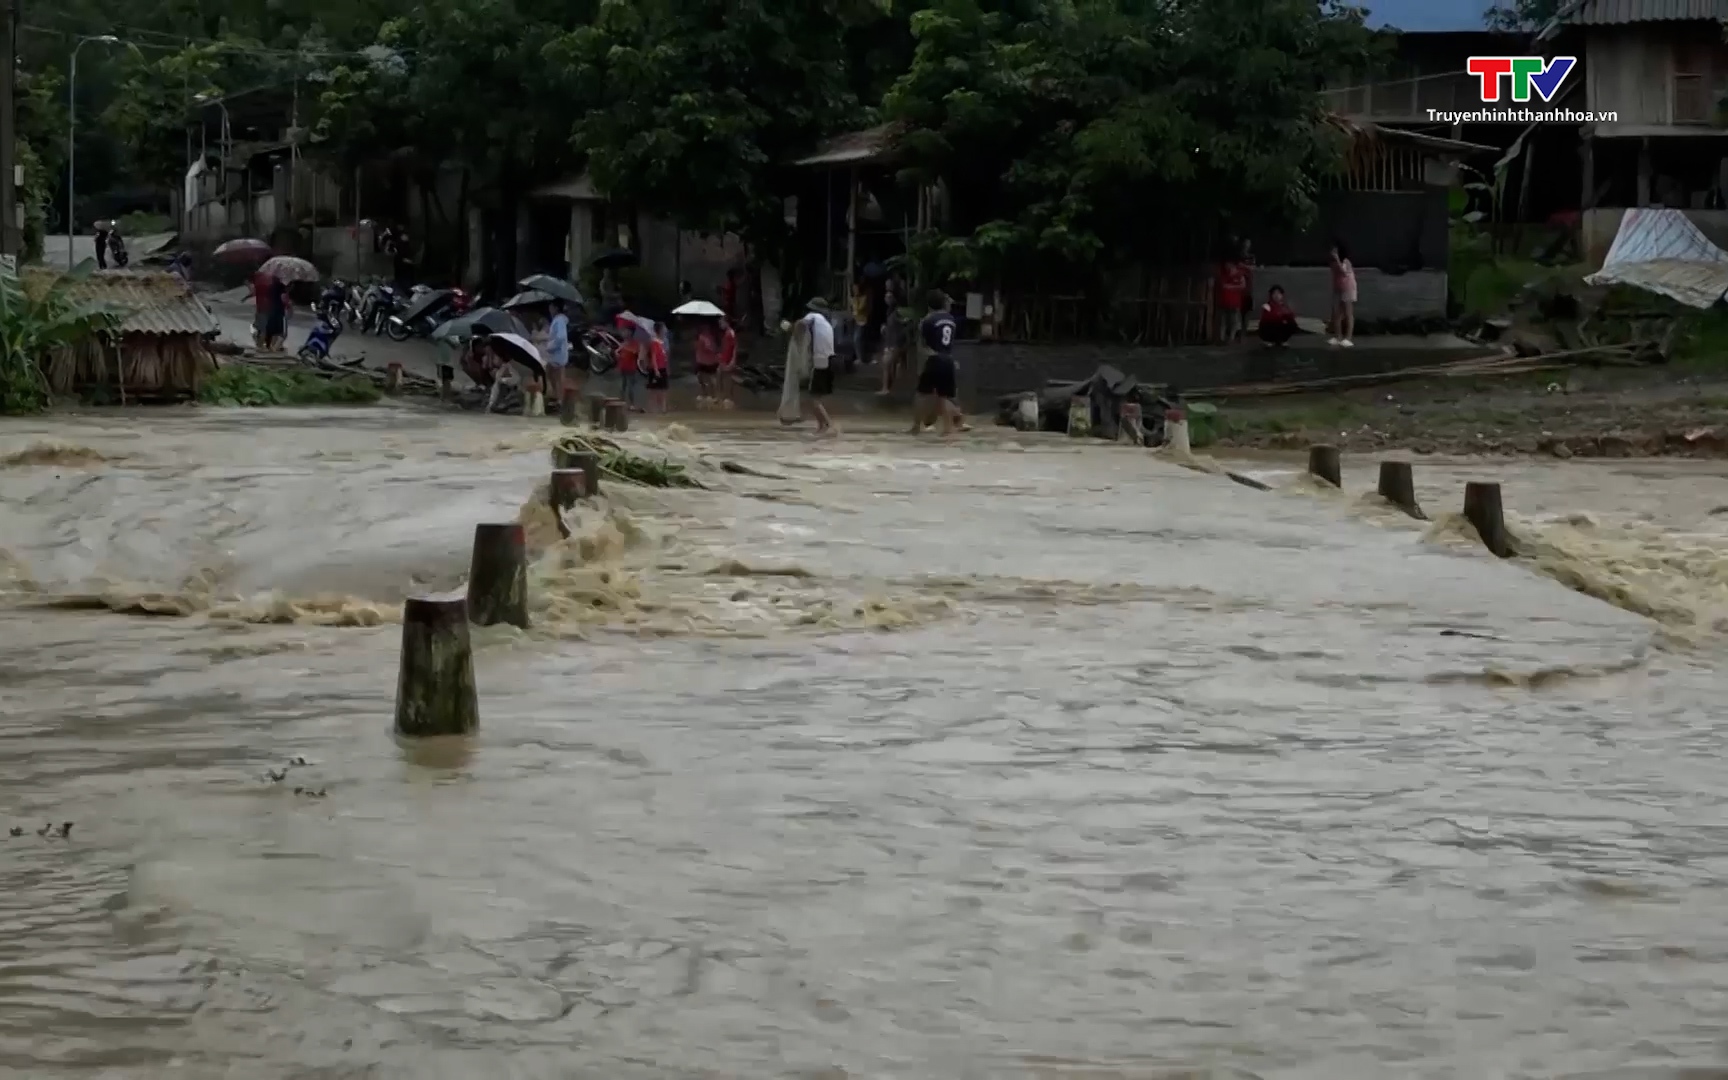 Huyện Quan Sơn: Mưa lớn trên diện rộng làm 1 người mất tích, nhiều tuyến đường bị sạt lở nghiêm trọng